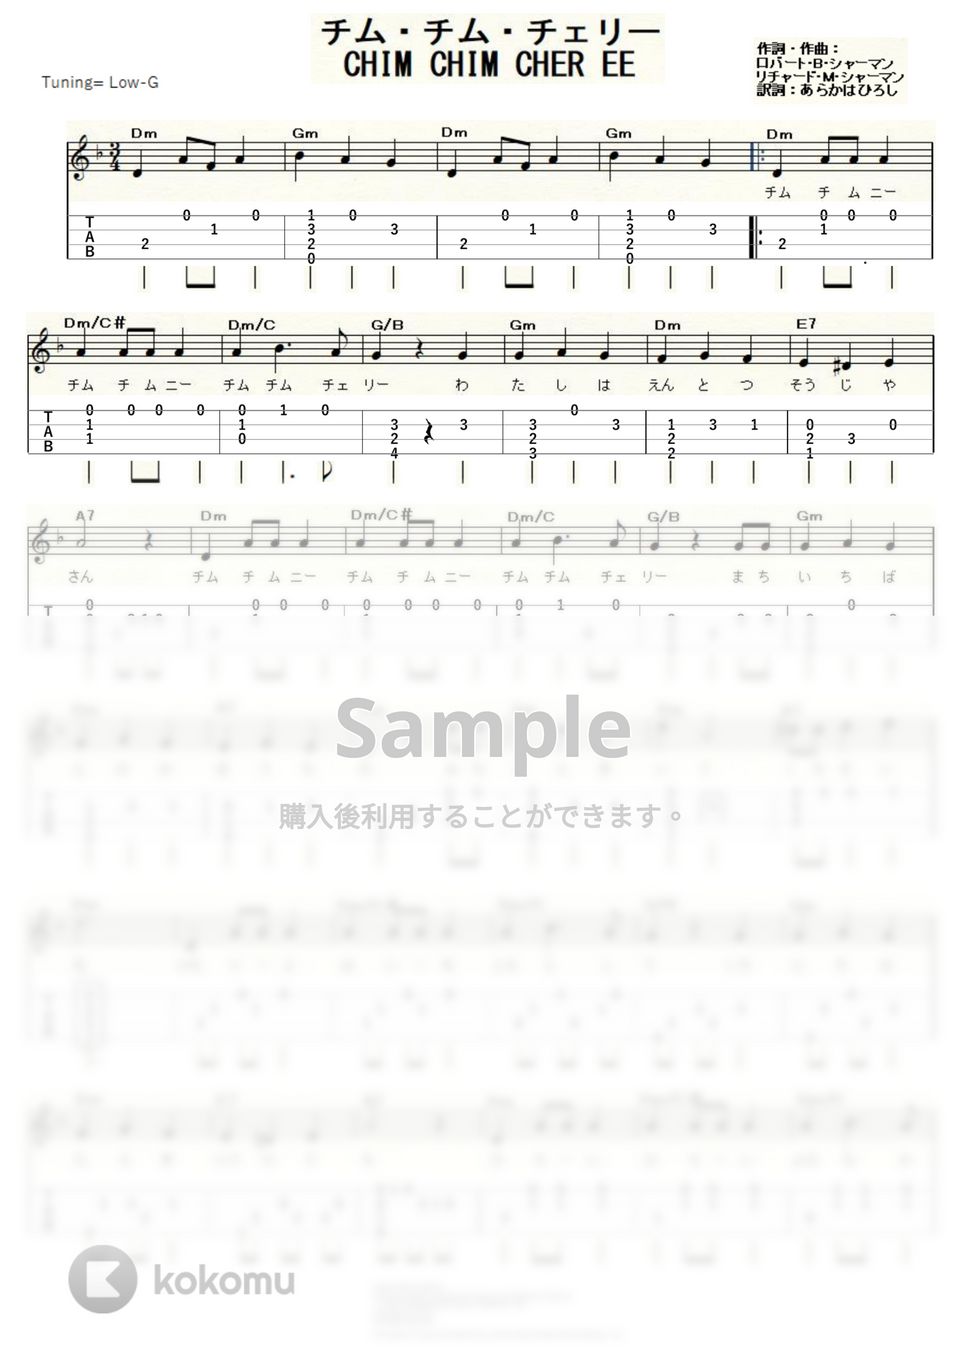 メリー・ポピンズ - チム・チム・チェリー (ｳｸﾚﾚｿﾛ / Low-G / 中級) by ukulelepapa